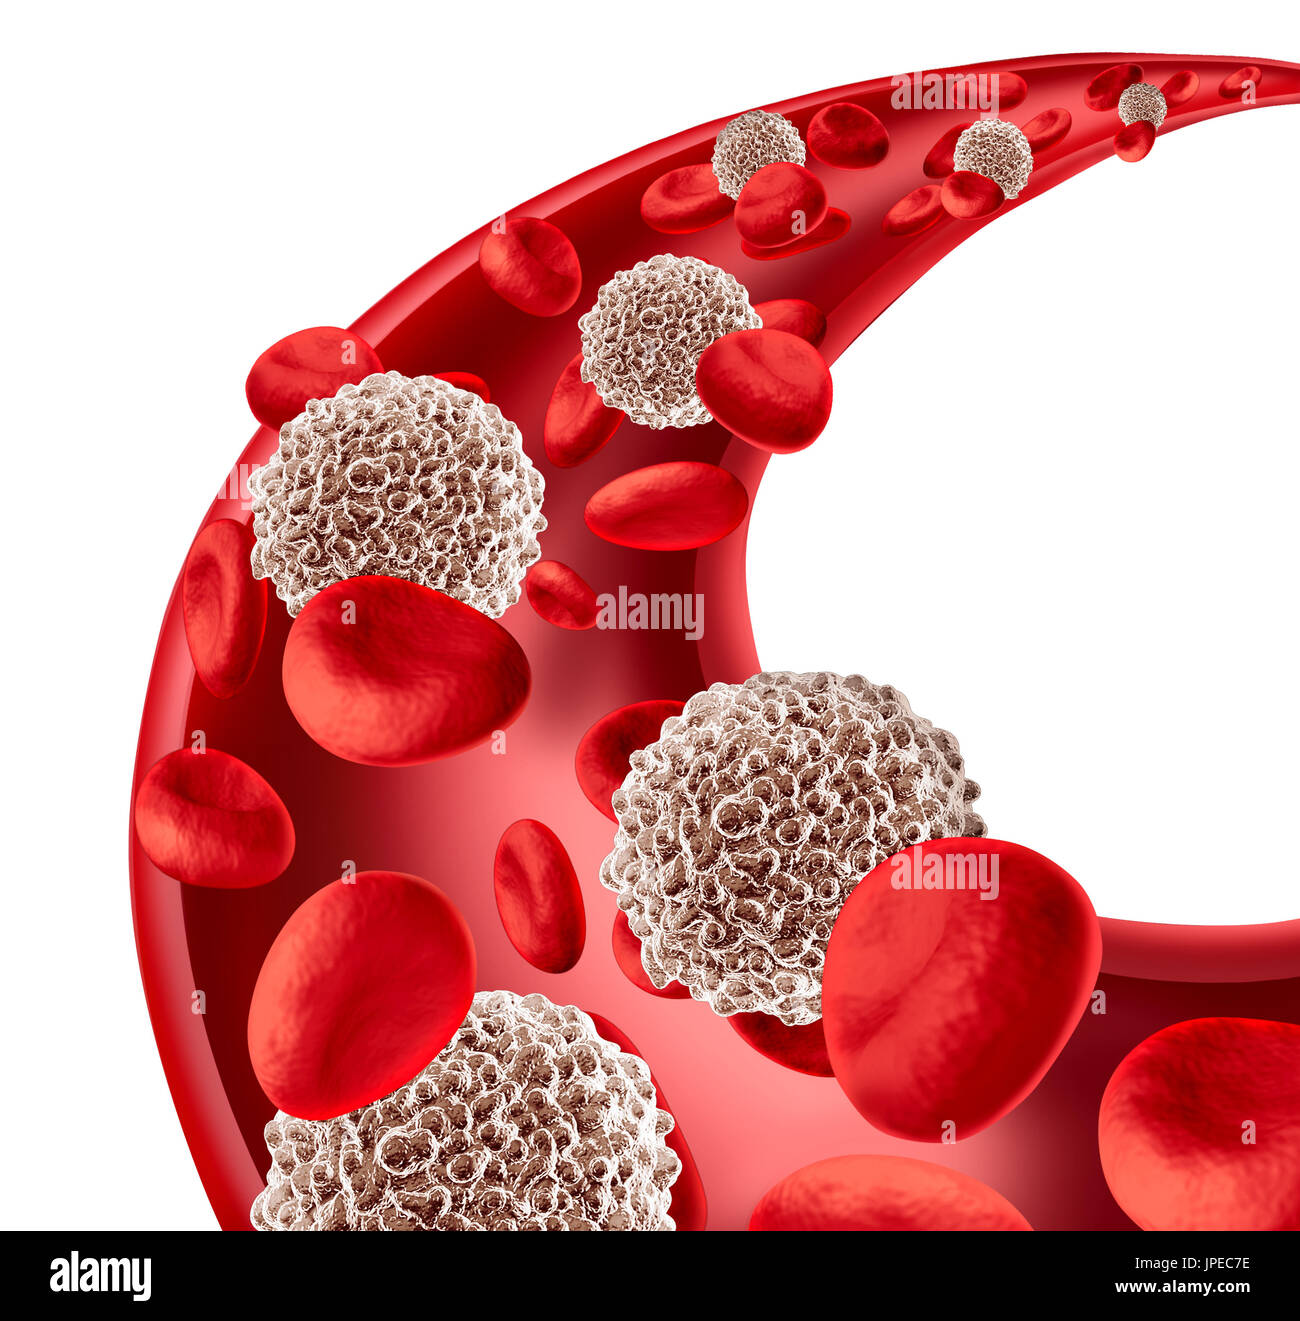 Weiße Blutkörperchen Verkehr Konzept in einem menschlichen Arterie fließt durch rotes Blut als Mikrobiologie Symbol des menschlichen Immunsystems. Stockfoto